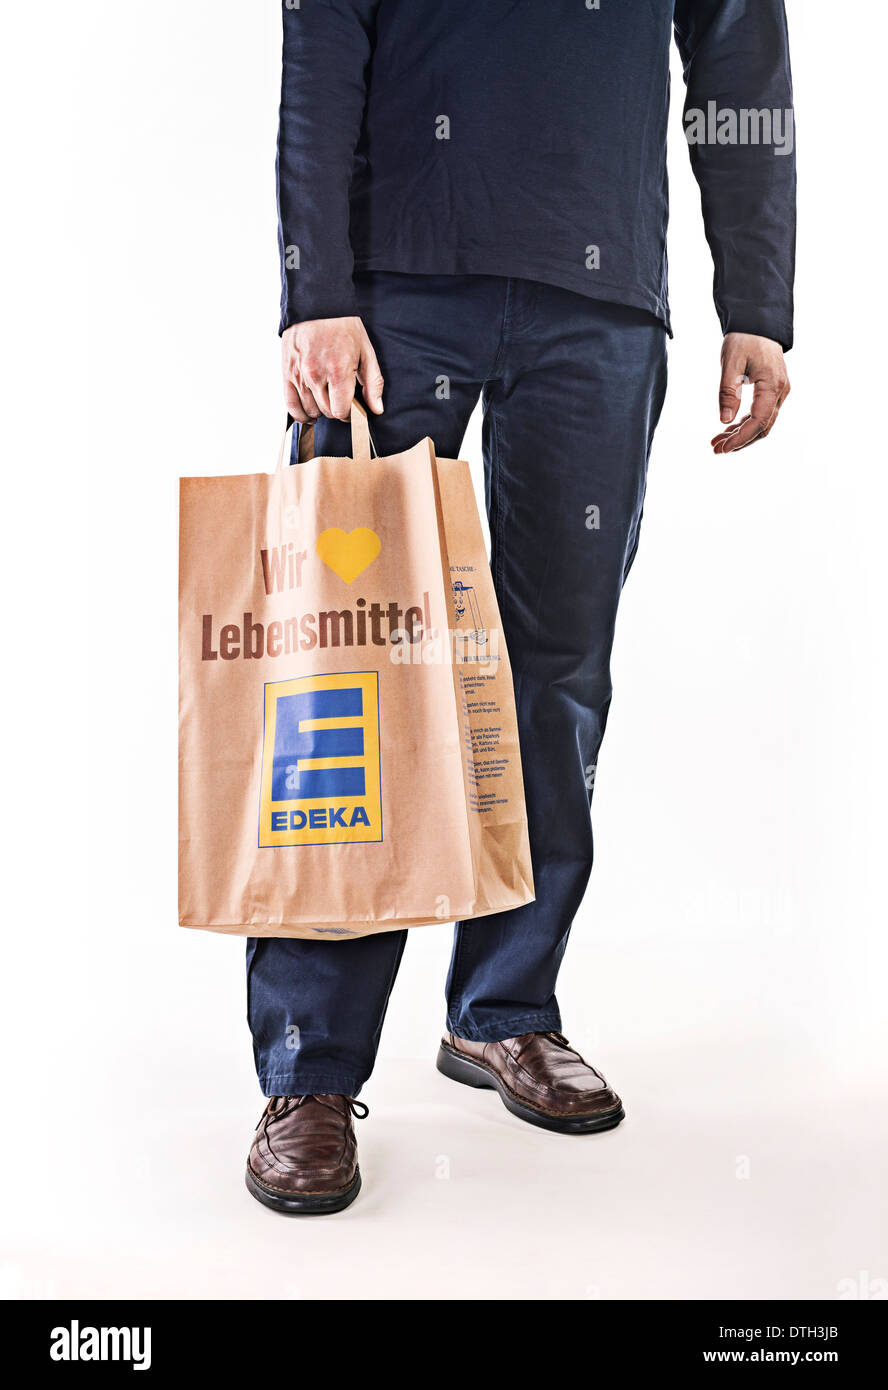 Unterkörper eines Mannes mit einer Papiertüte der Lebensmittelkette Edeka. Stockfoto